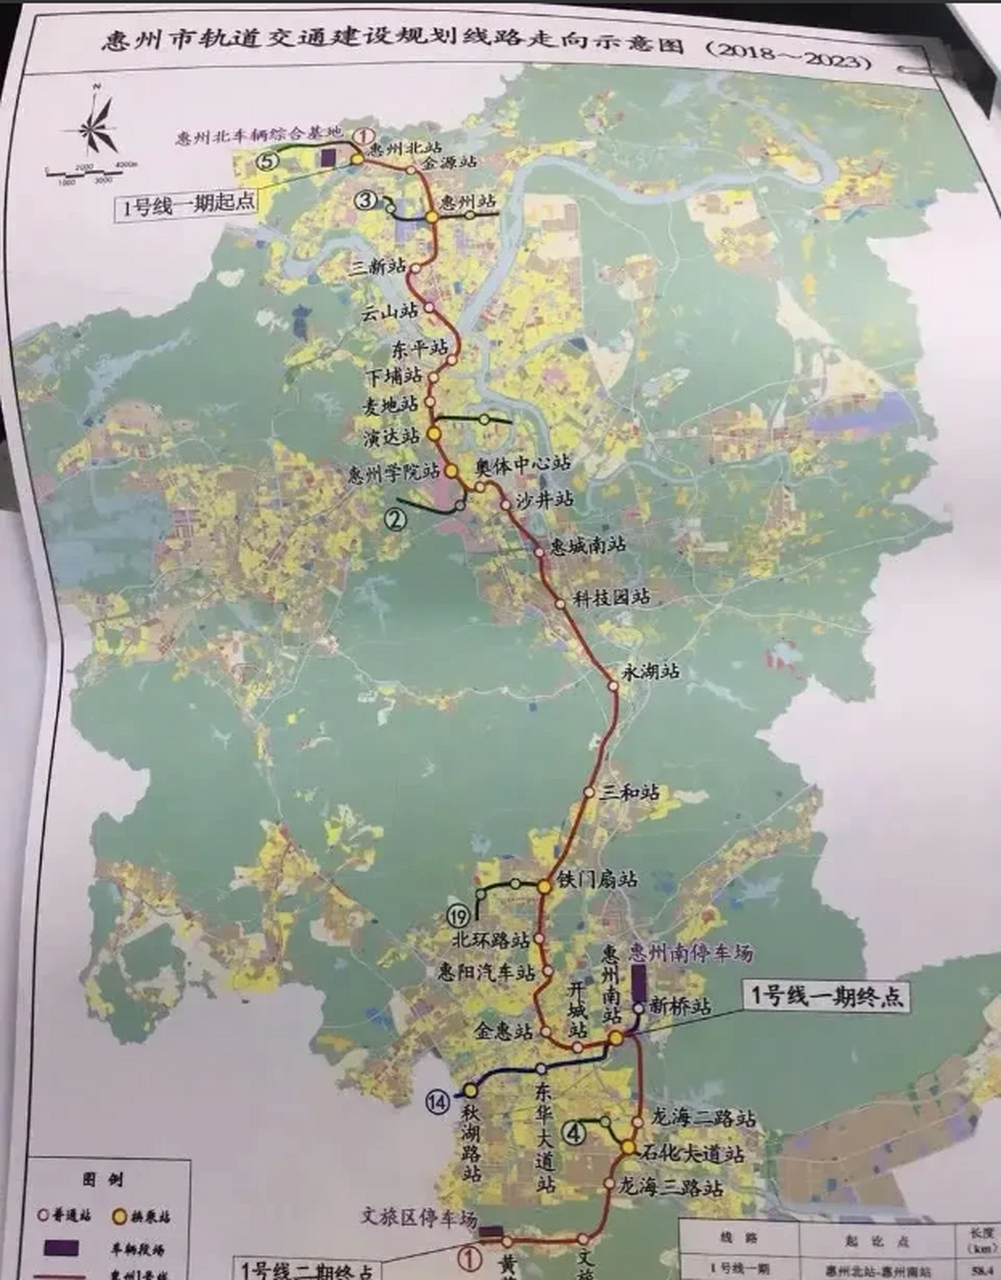 2018年惠州规划建设的地铁1号线